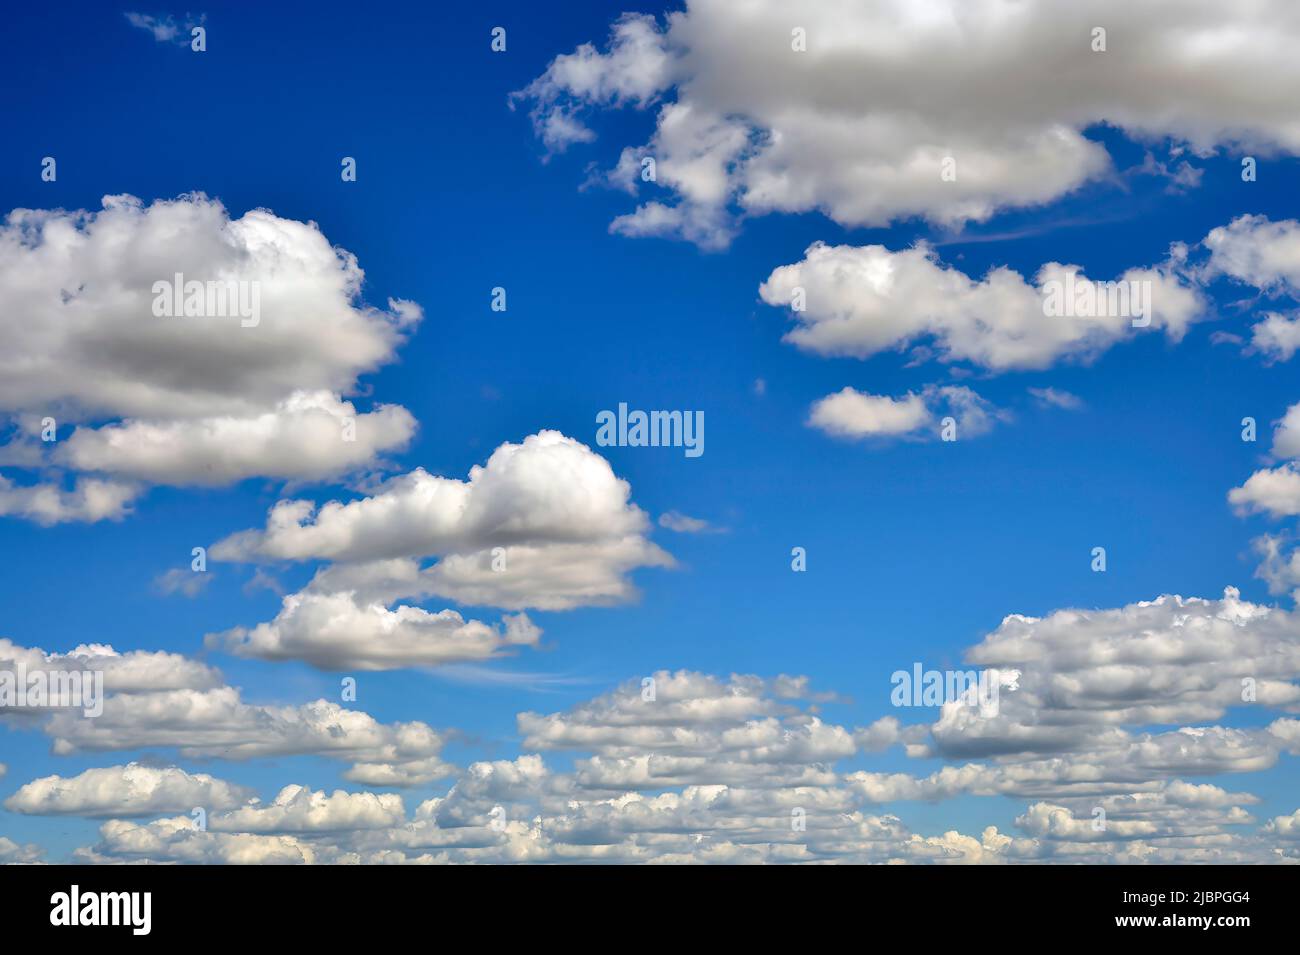 Nubes hinchadas blancas flotando sobre un cielo azul en la zona rural de Alberta, Canadá Foto de stock